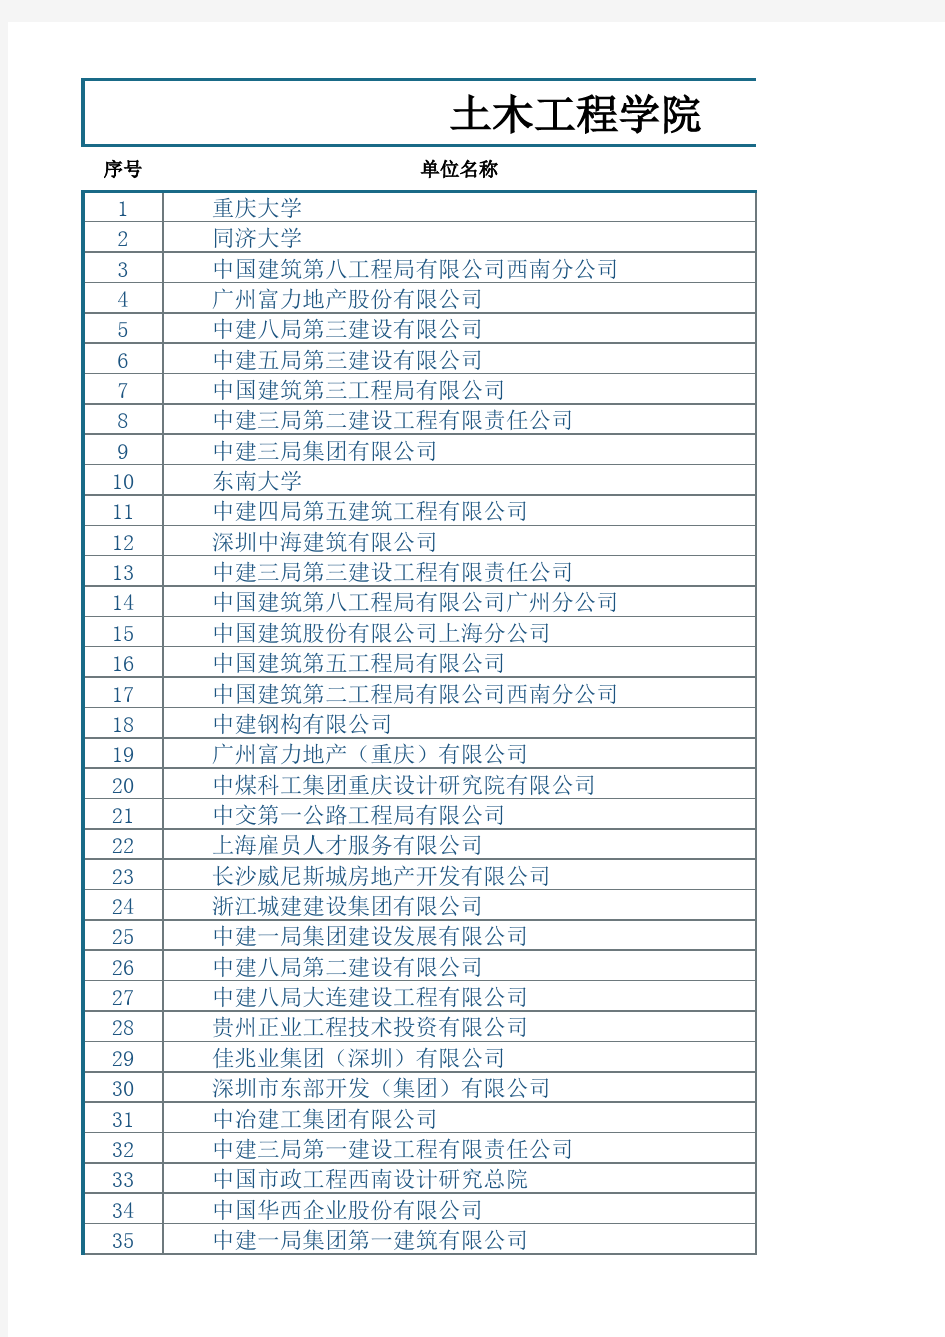 重庆大学2014届土木工程学院本科就业情况统计